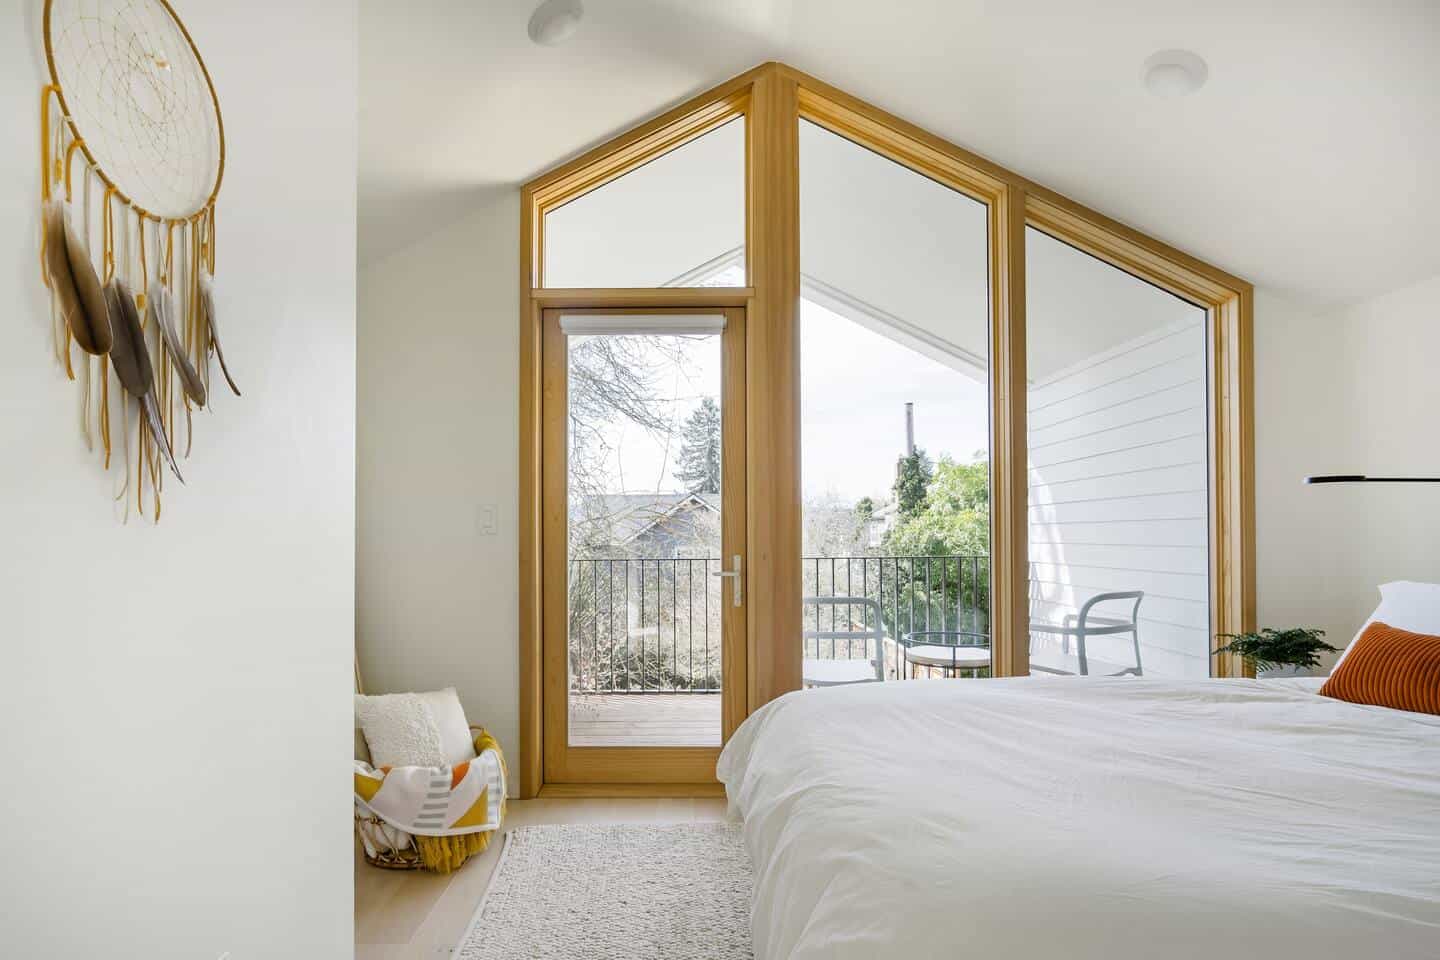 Noua pensiune modernă în partea centrală de est a Portlandului - Airbnb1